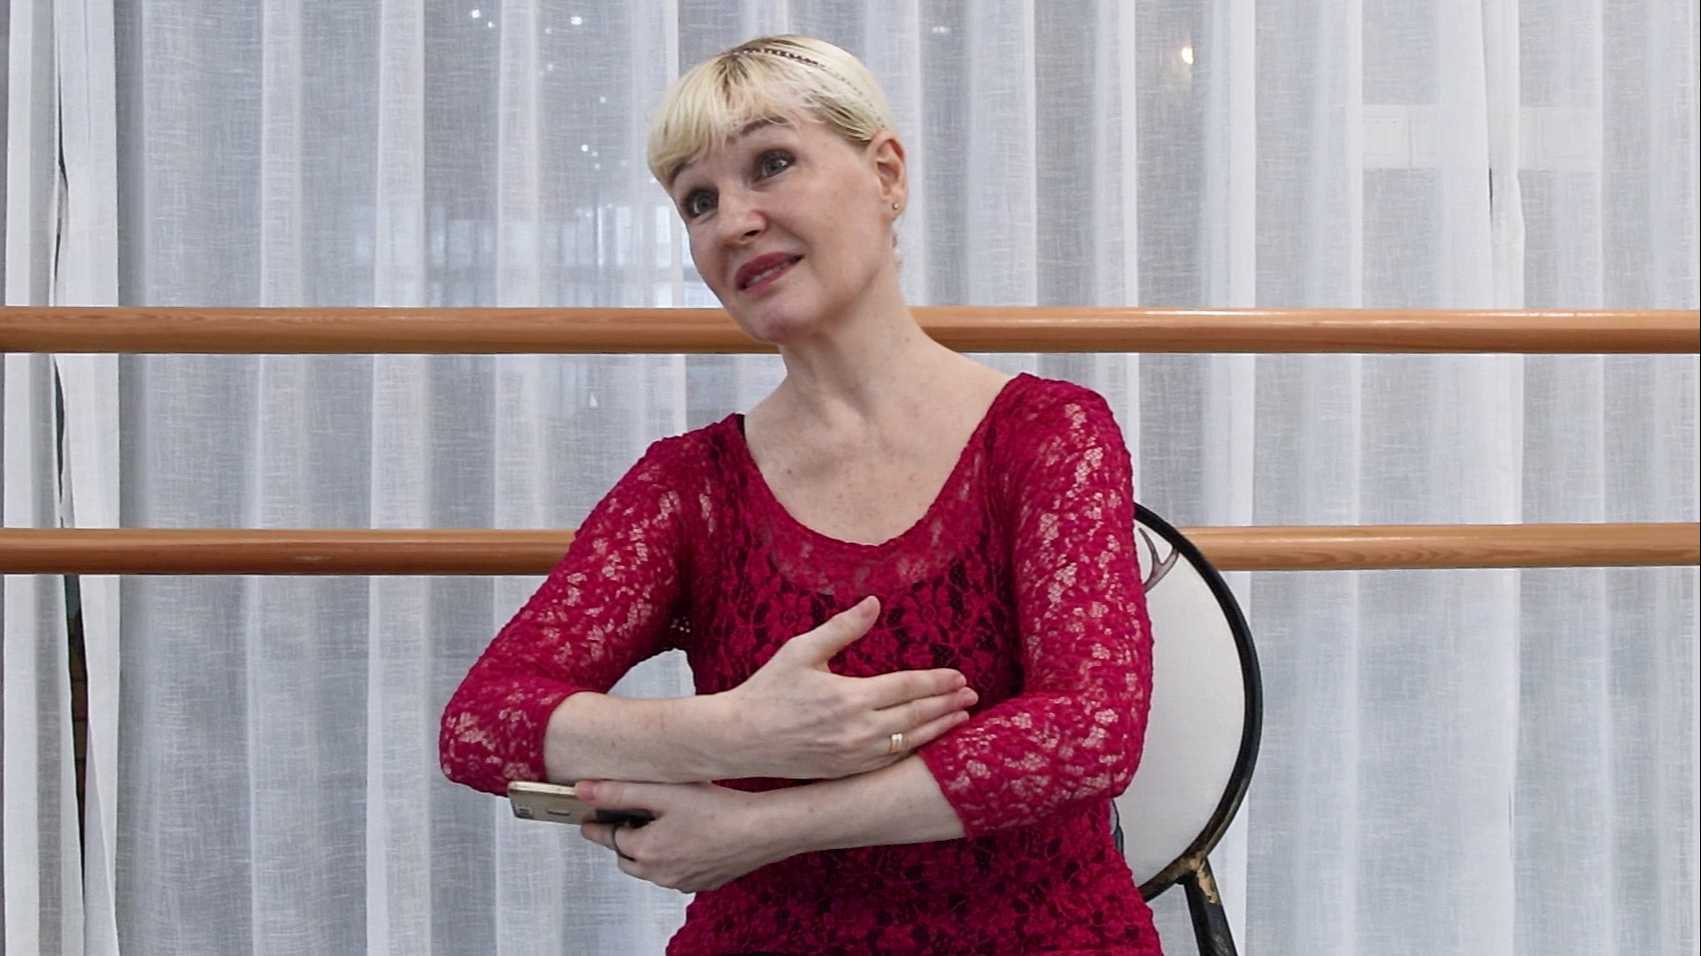 【个人作品】人物专题报道——采访67岁的俄罗斯芭蕾舞专家奥利亚